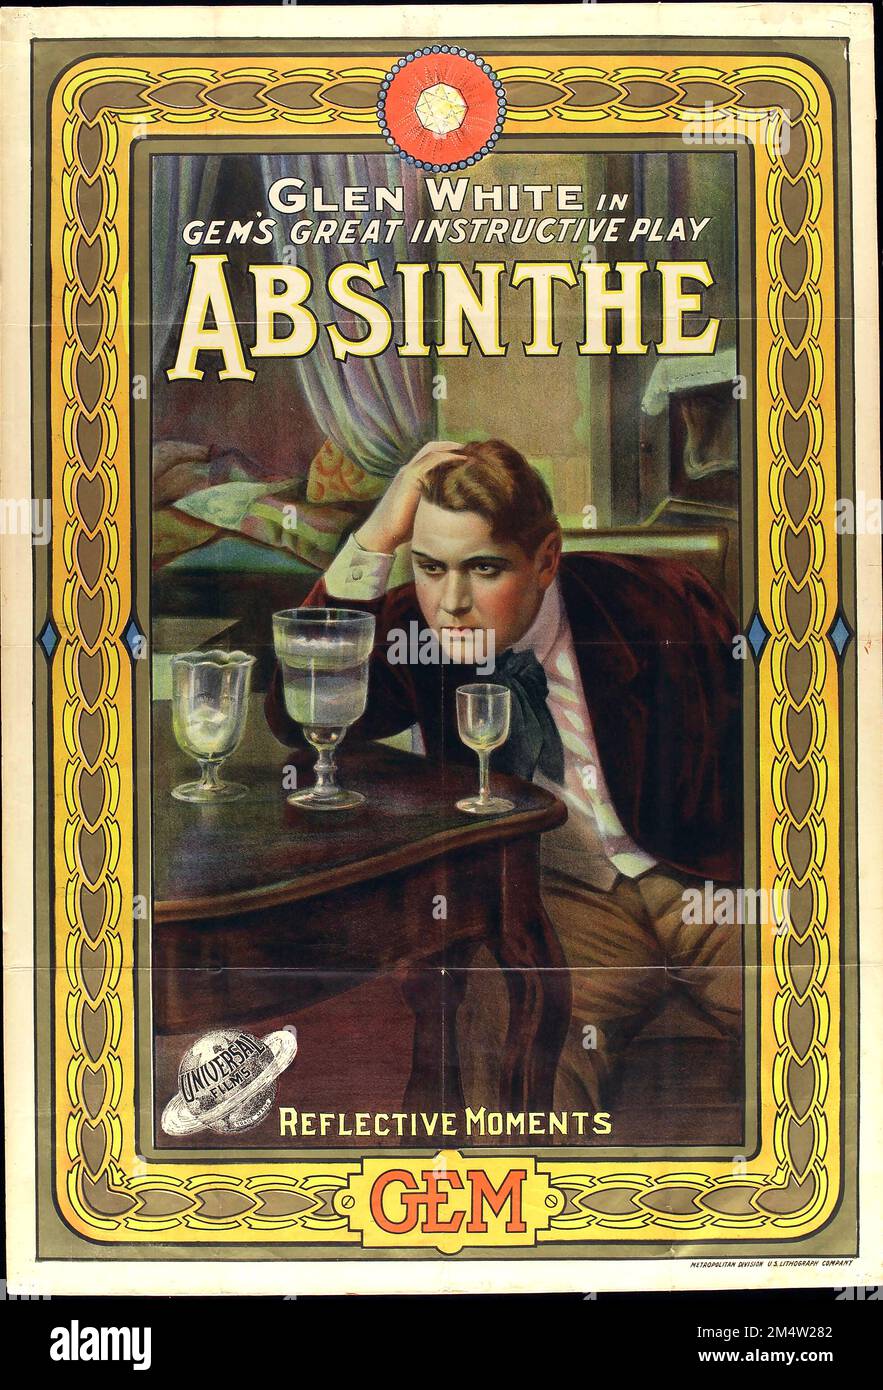 Un adicto a absinthe mirando tres gafas en una mesa; anuncio de la película 'Absinthe'. Litografía en color, ca. 1913. Foto de stock